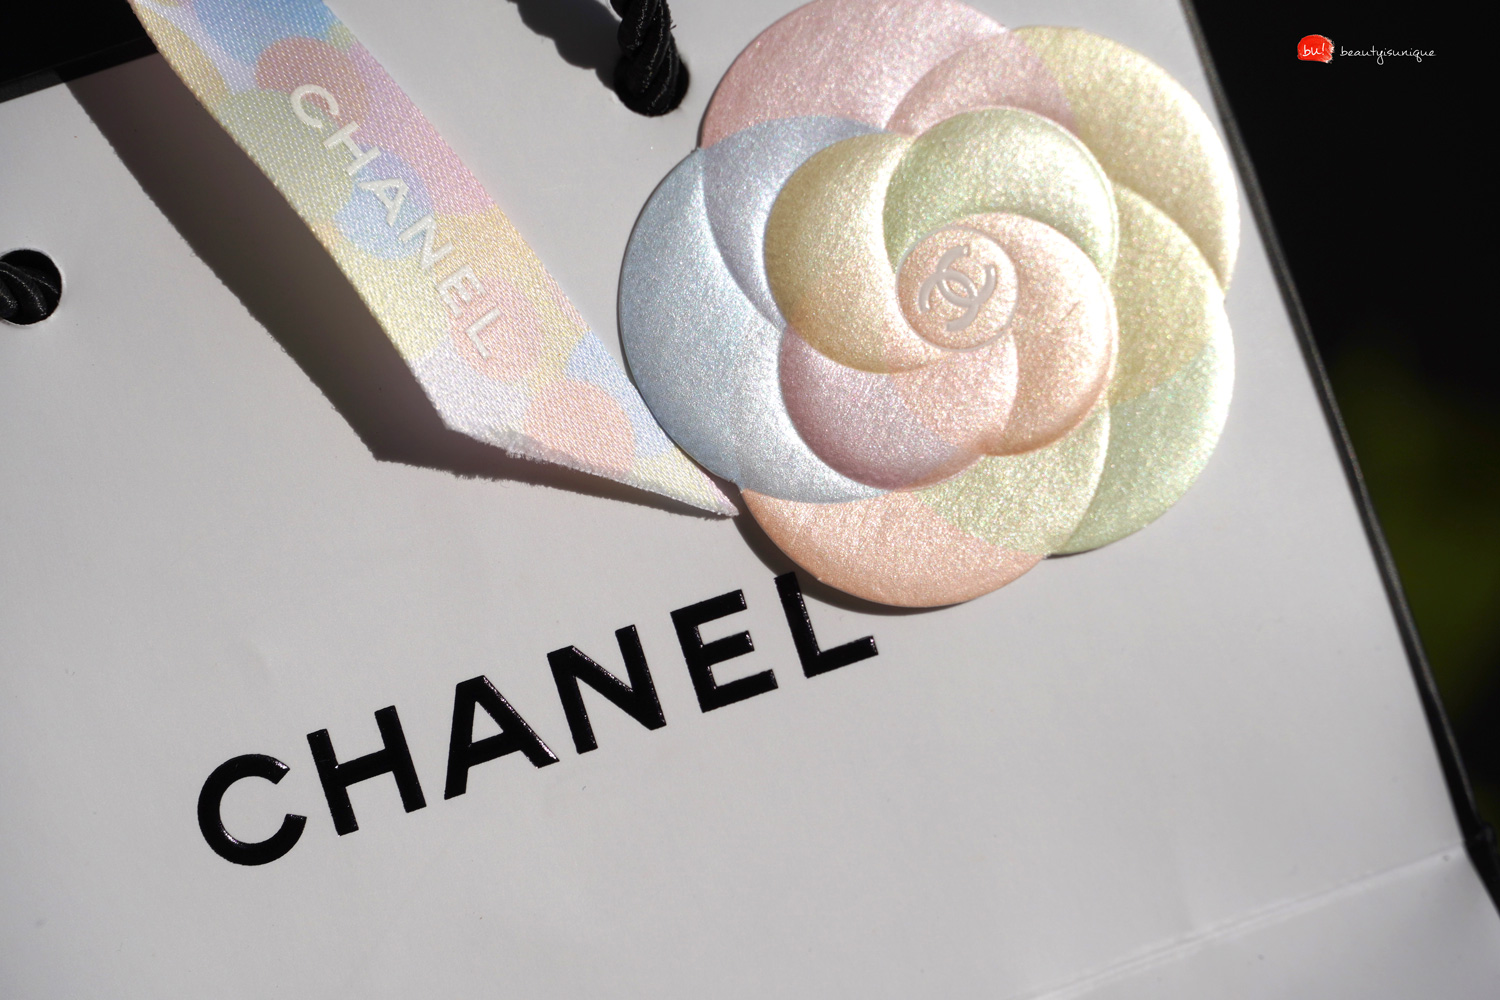 Chanel-limiere-et-contraste-2019